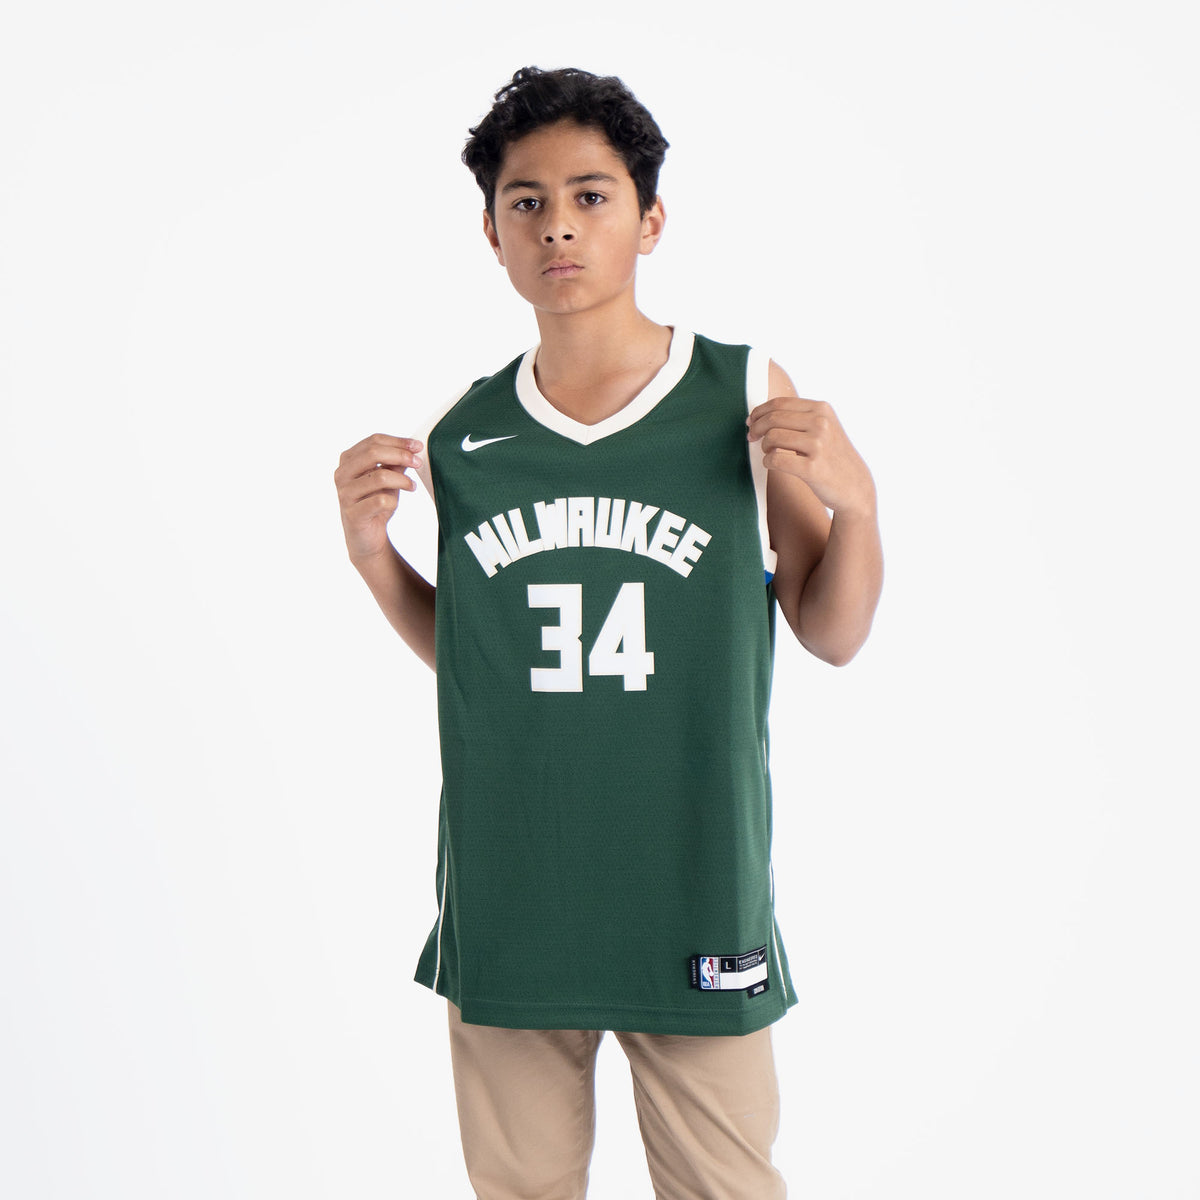 Giannis Antetokounmpo Milwaukee Bucks NBA Toddler Boys 2-4 Green Icon Edition Player Jersey